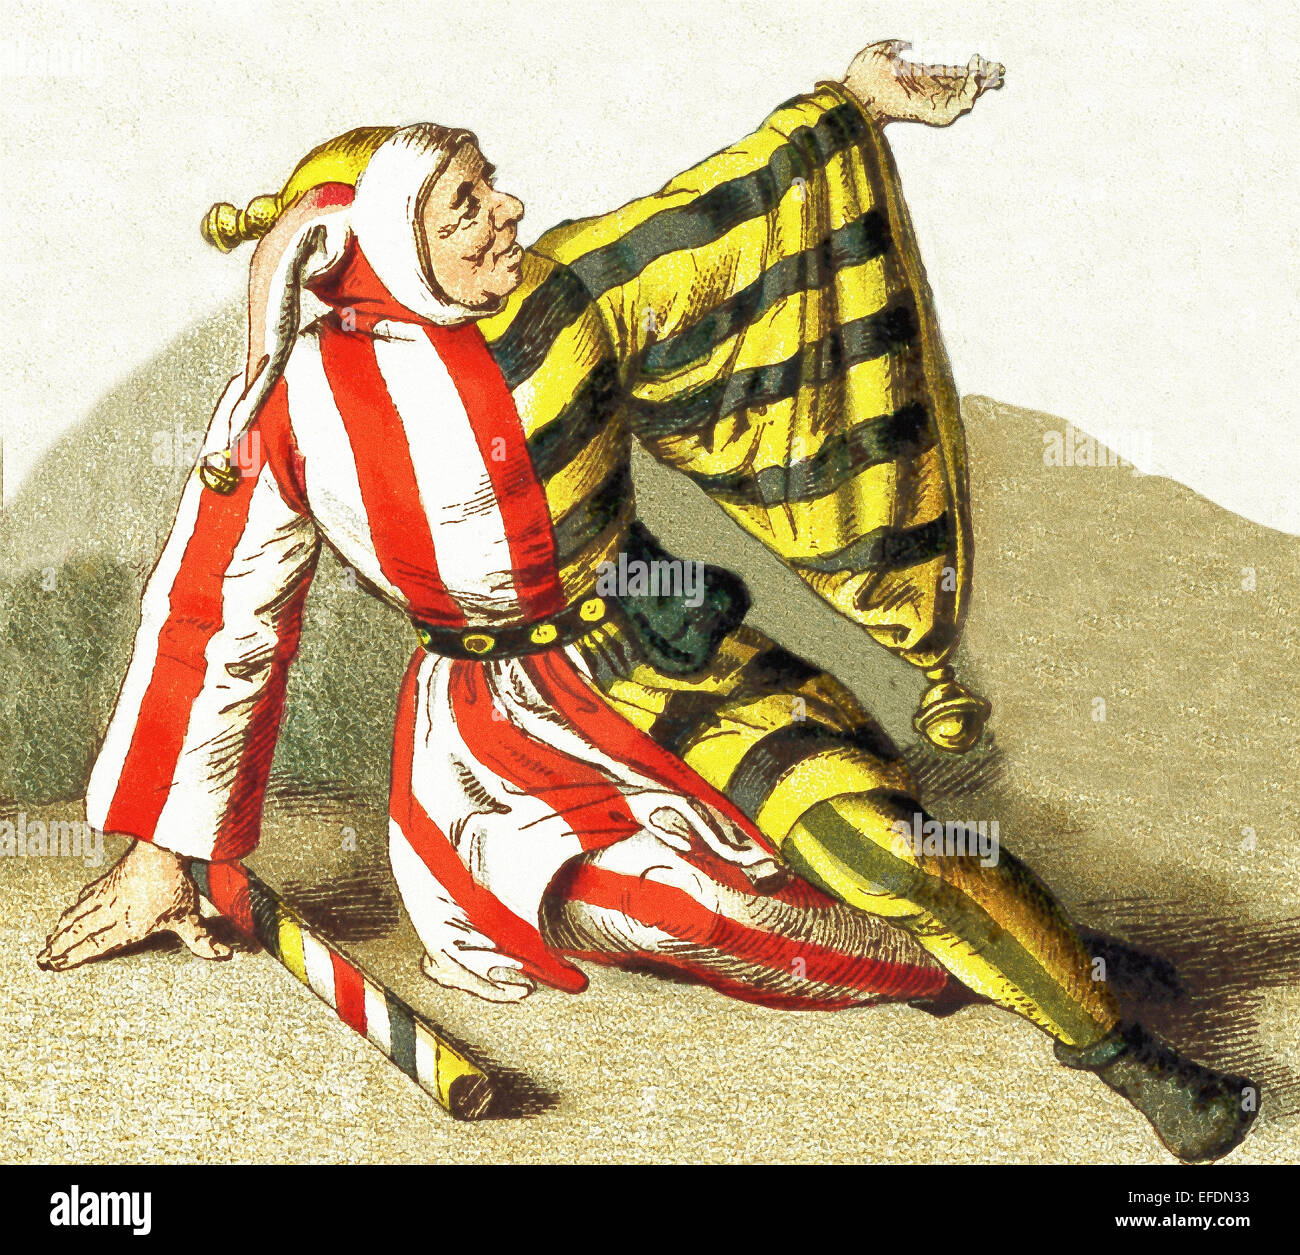 La figure représentée ici est un imbécile, ou bouffon, entre 1500 et 1550. L'illustration dates à 1882. Banque D'Images